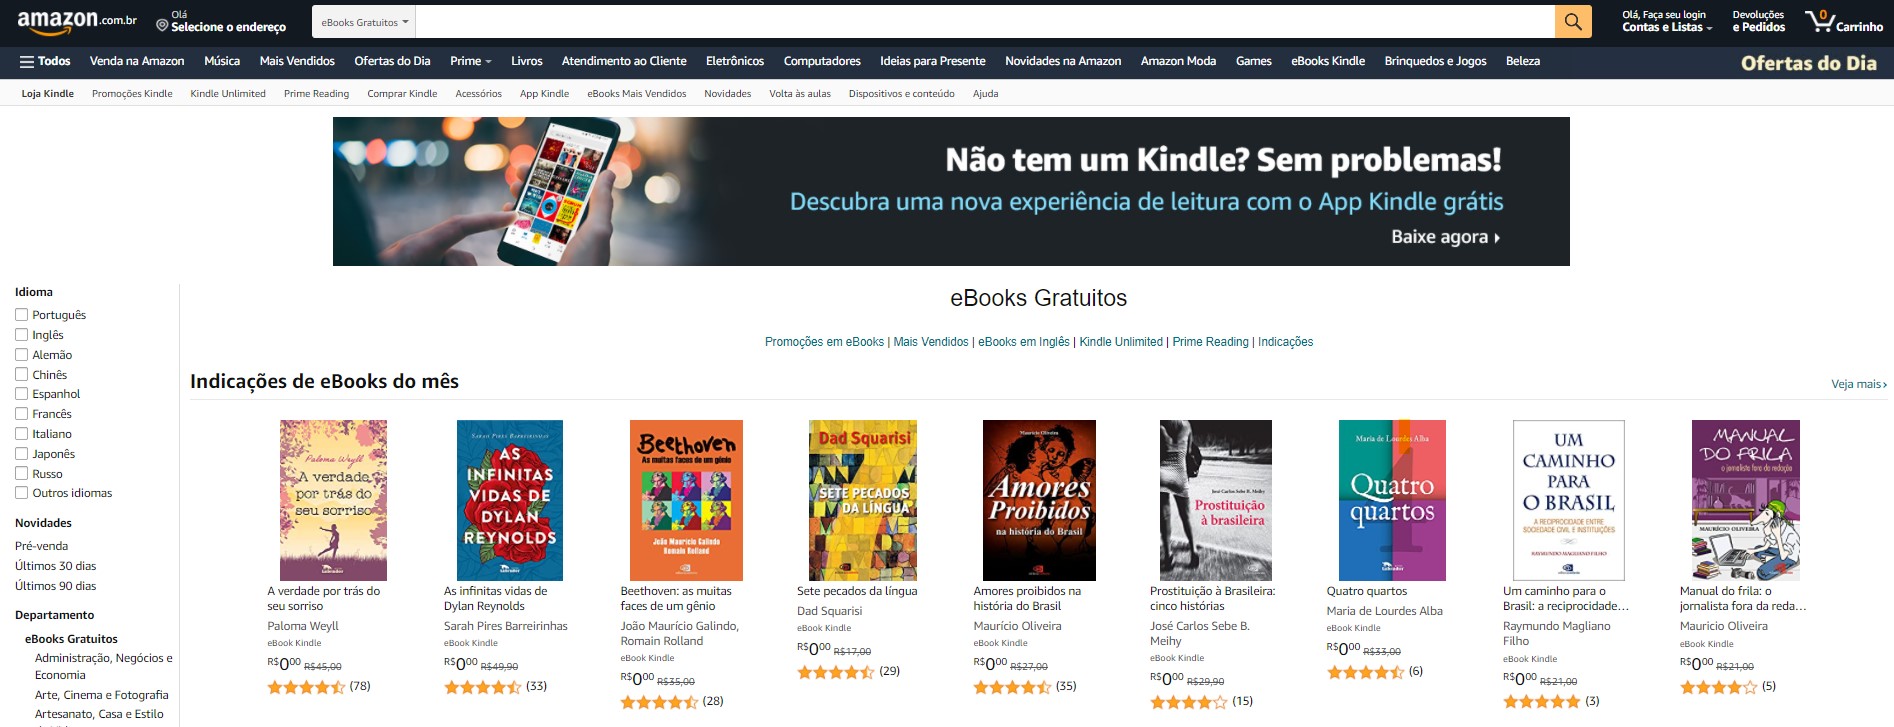 Amazon - Melhores sites para baixar livros em PDF de graça